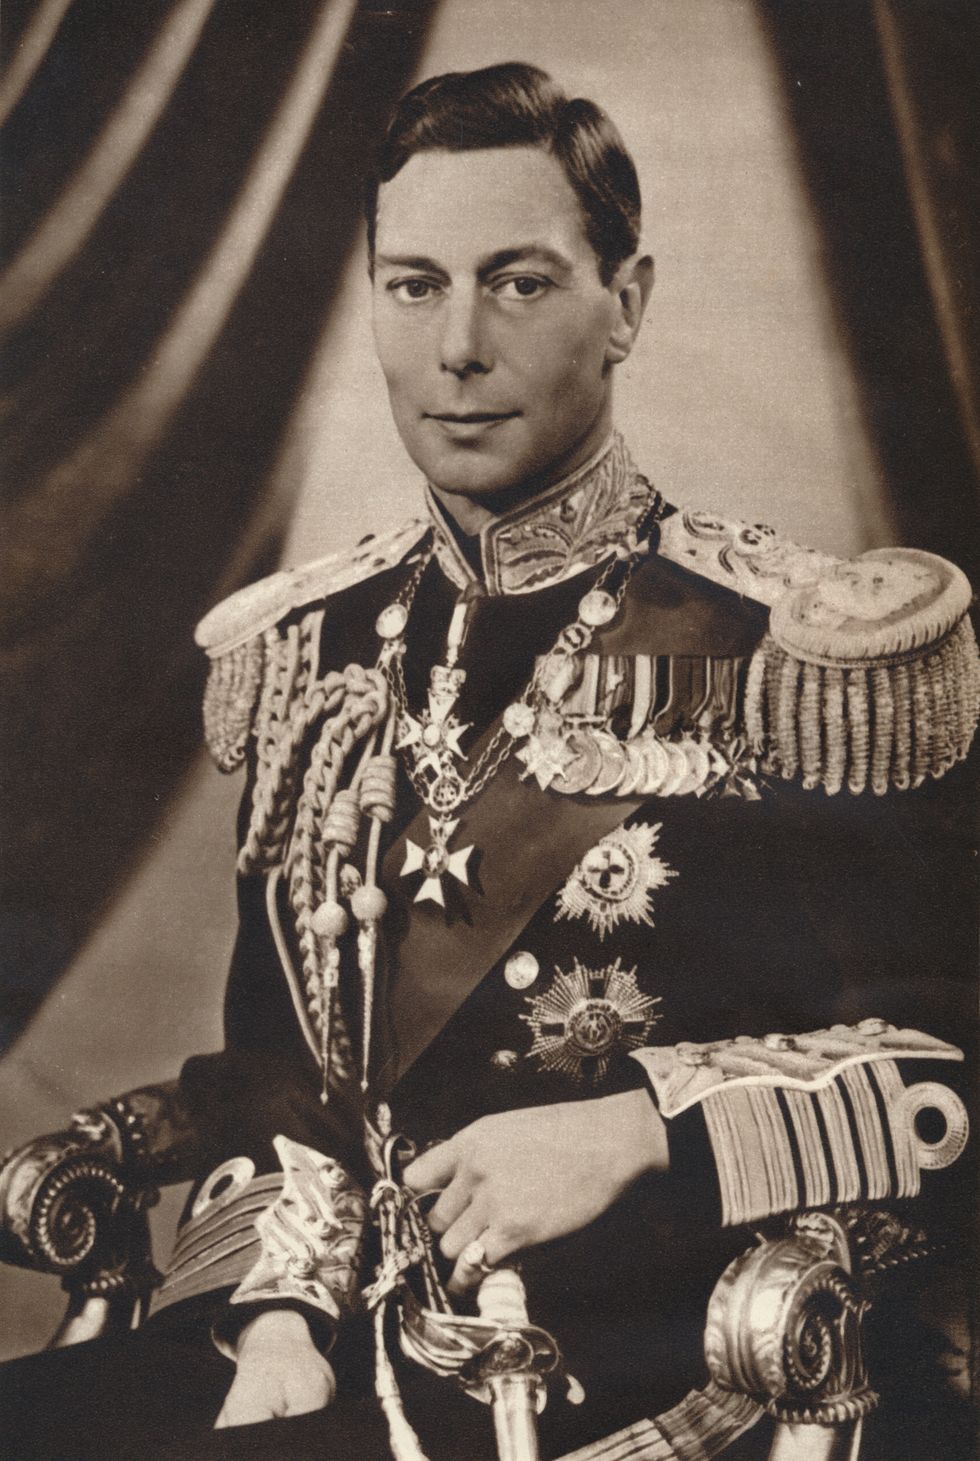 el rey jorge vi de reino unido posando para una fotoen blanco y negro en 1936